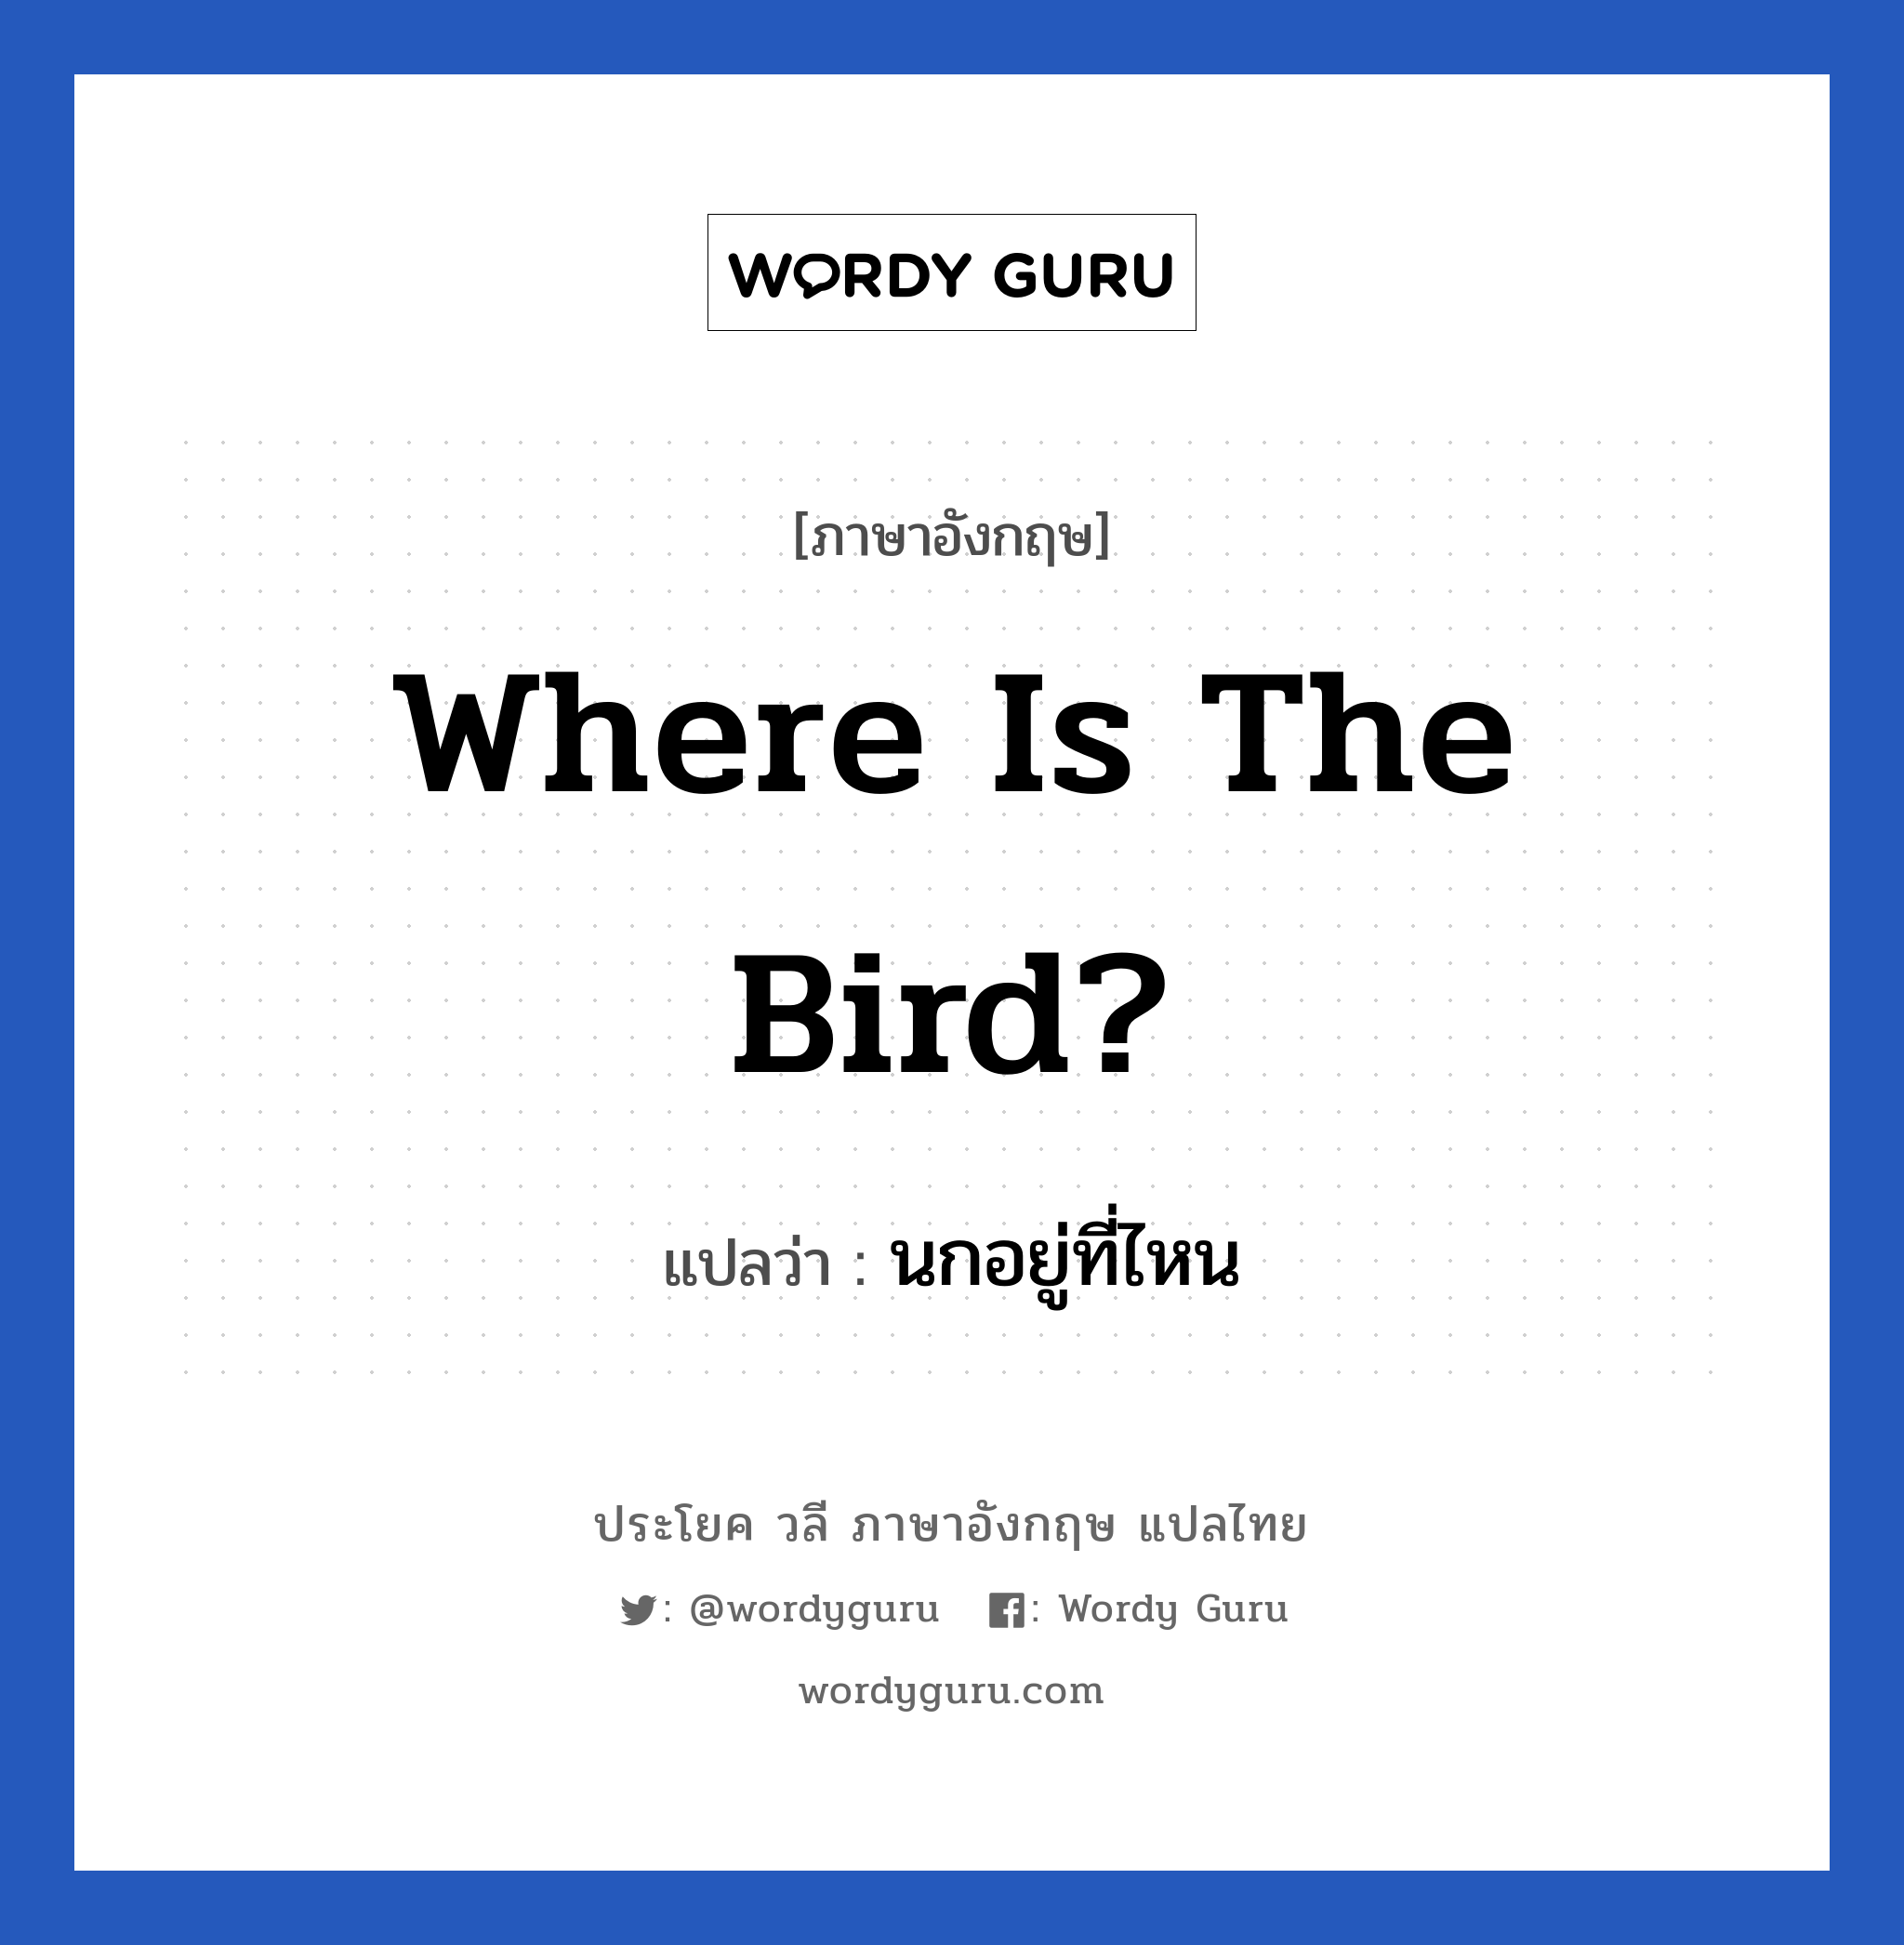 นกอยู่ที่ไหน ภาษาอังกฤษ?, วลีภาษาอังกฤษ นกอยู่ที่ไหน แปลว่า Where is the bird?